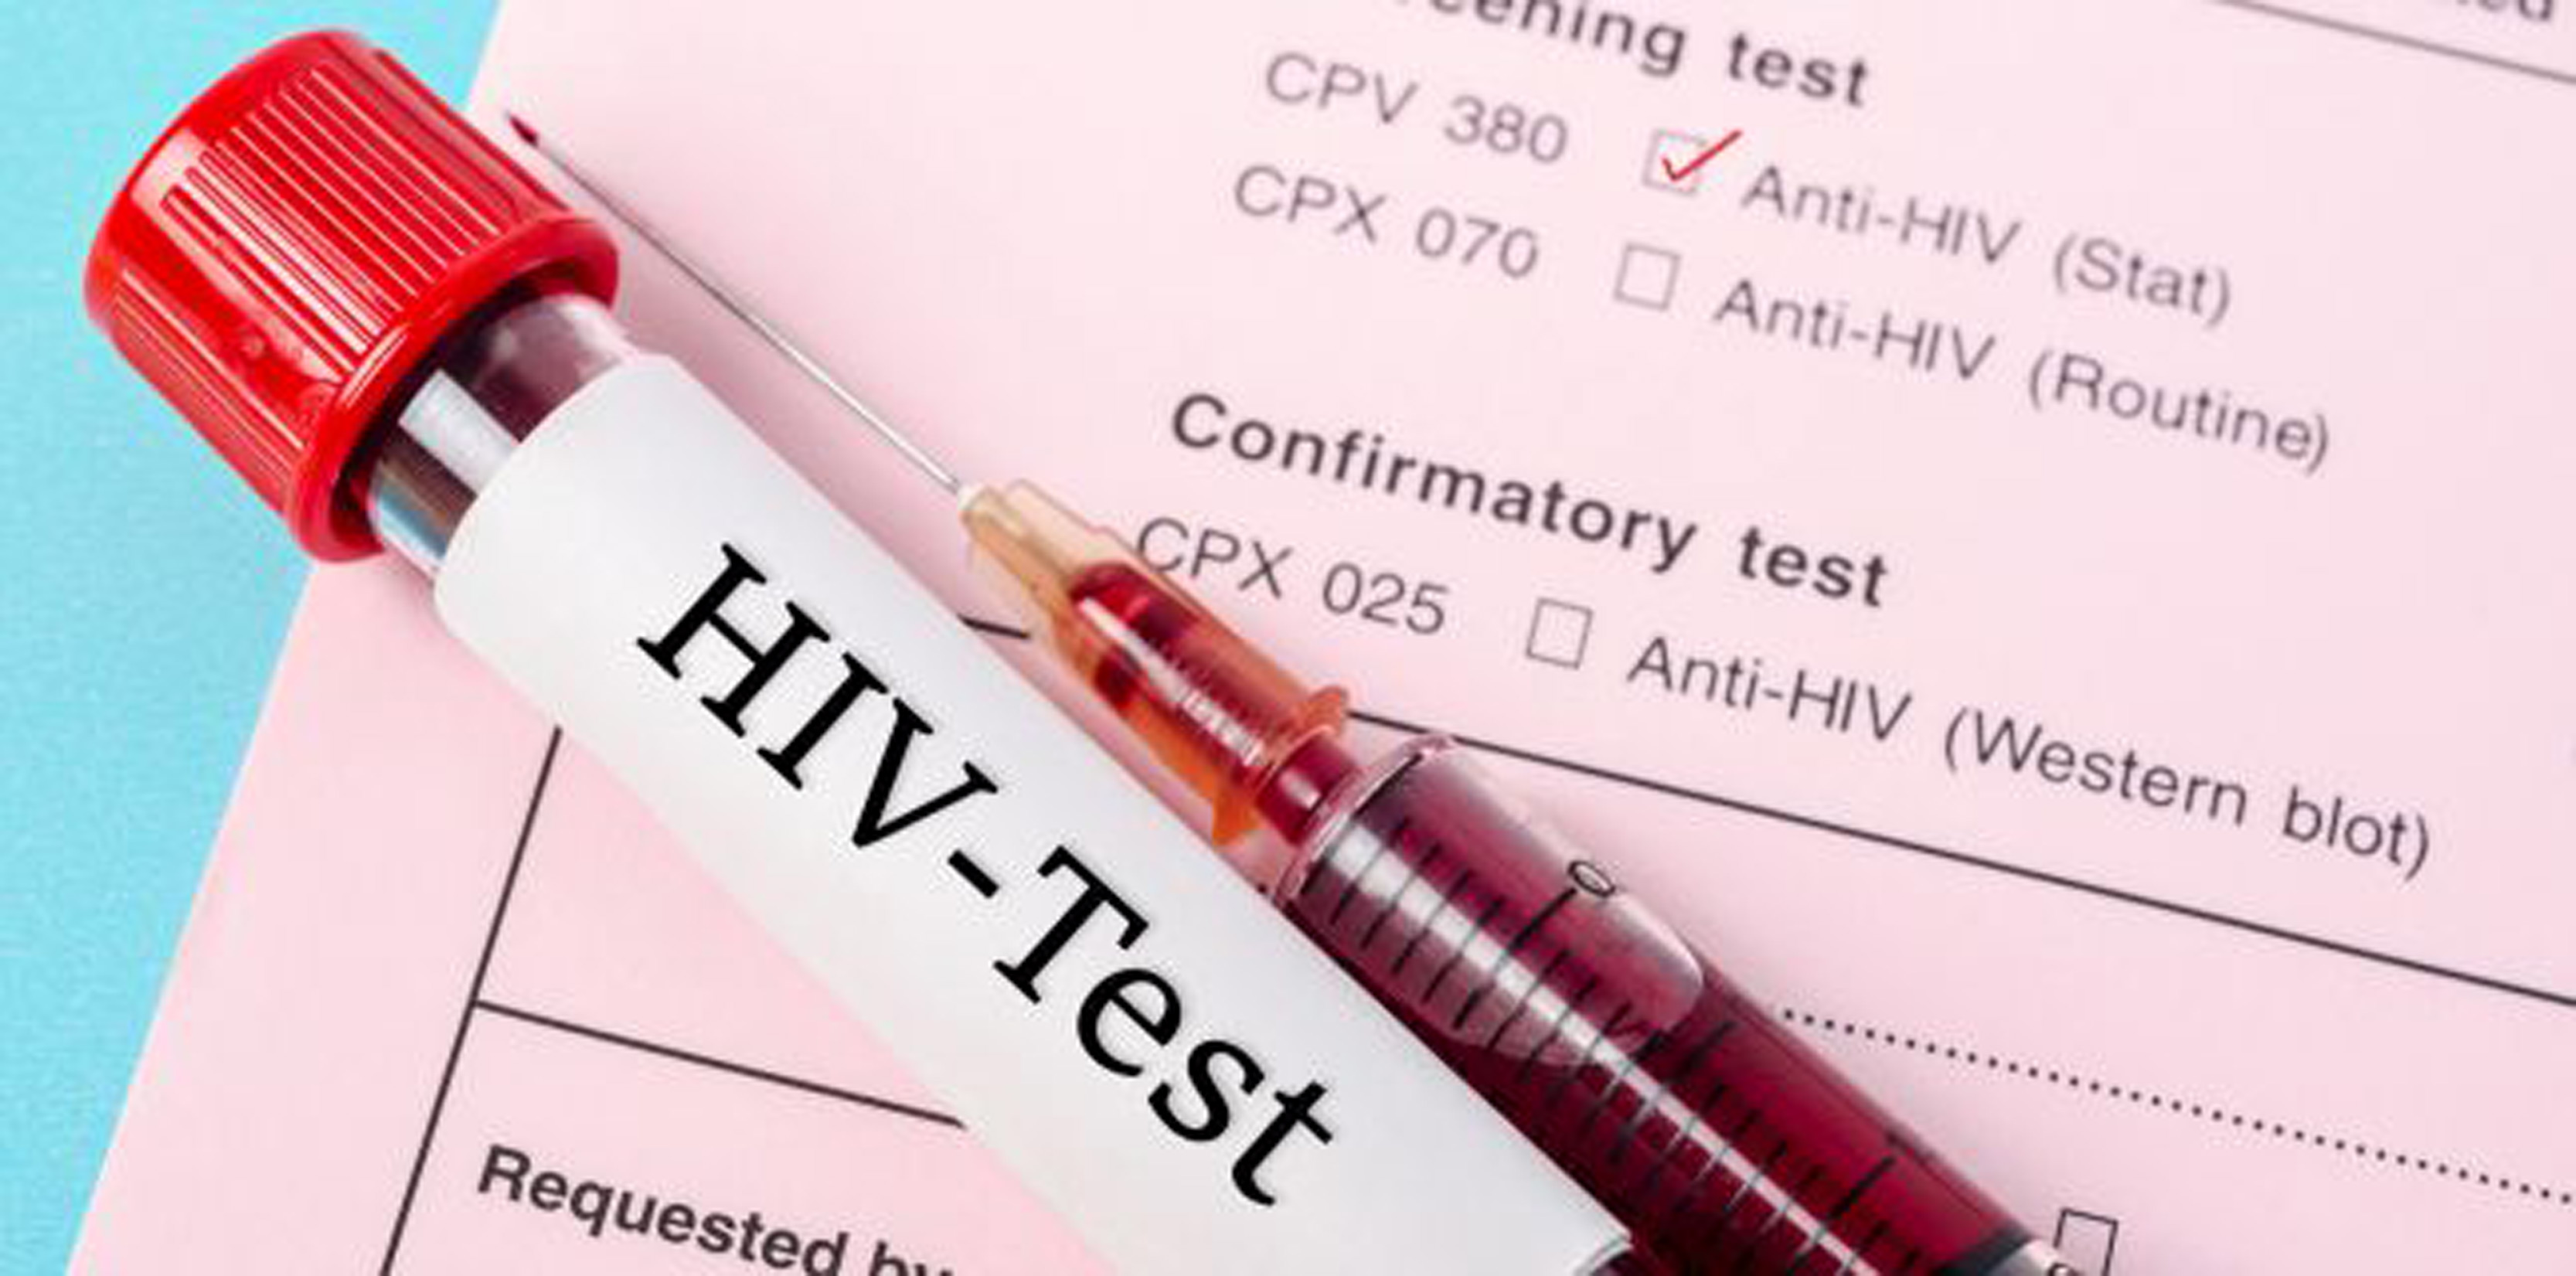 Controlul greutății corporale și HIV - InformatHIV